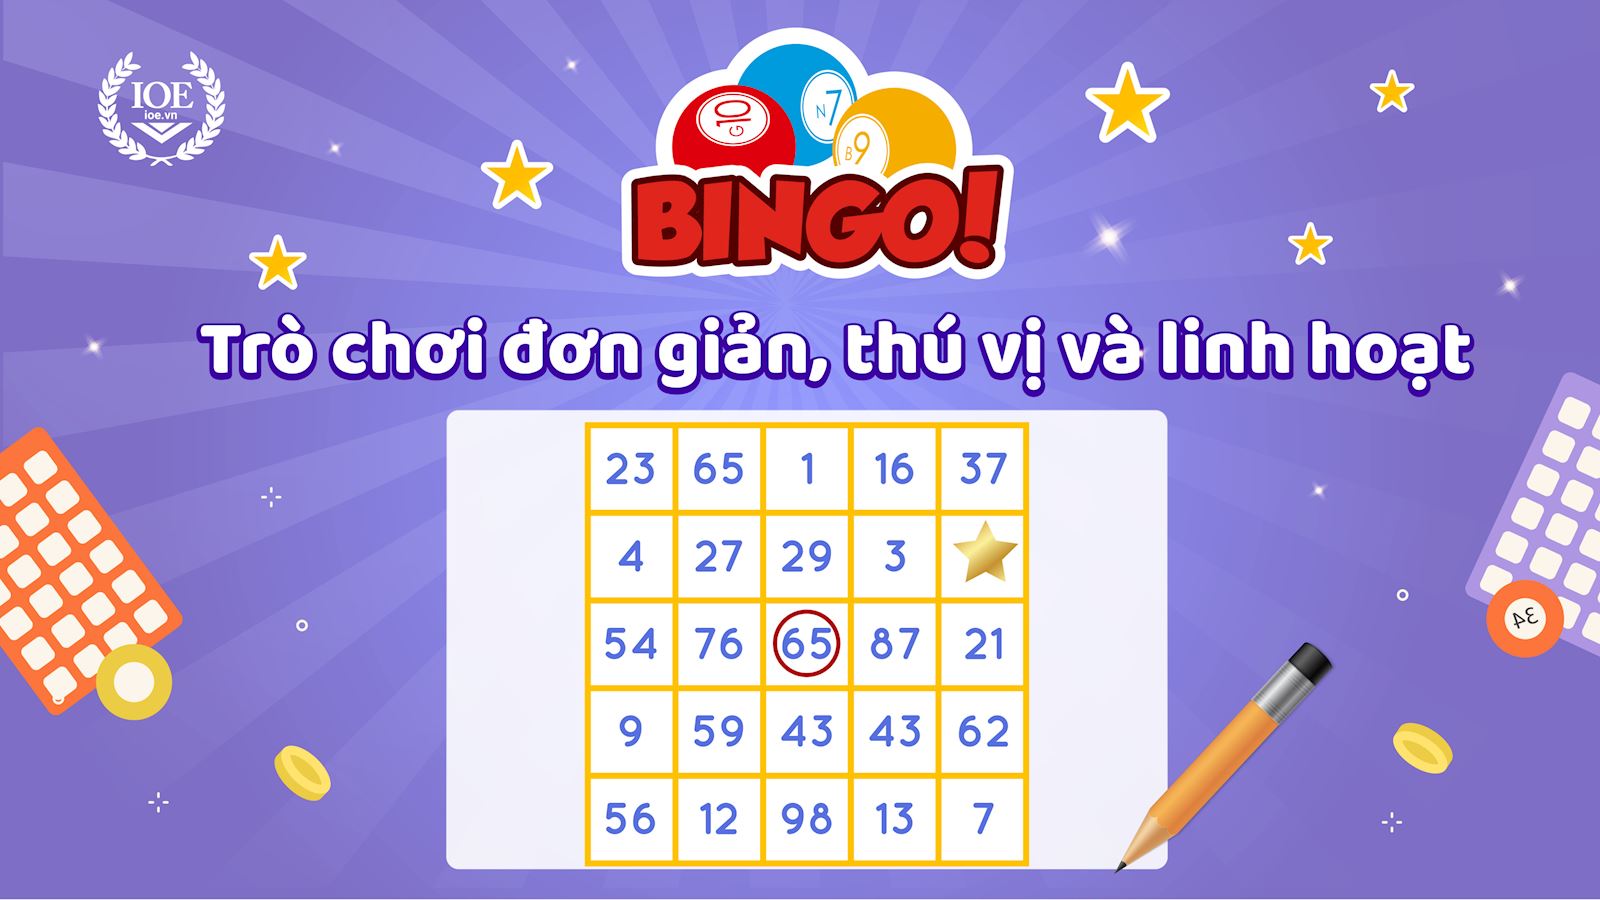 Bingo - Trò chơi đơn giản, thú vị và linh hoạt 